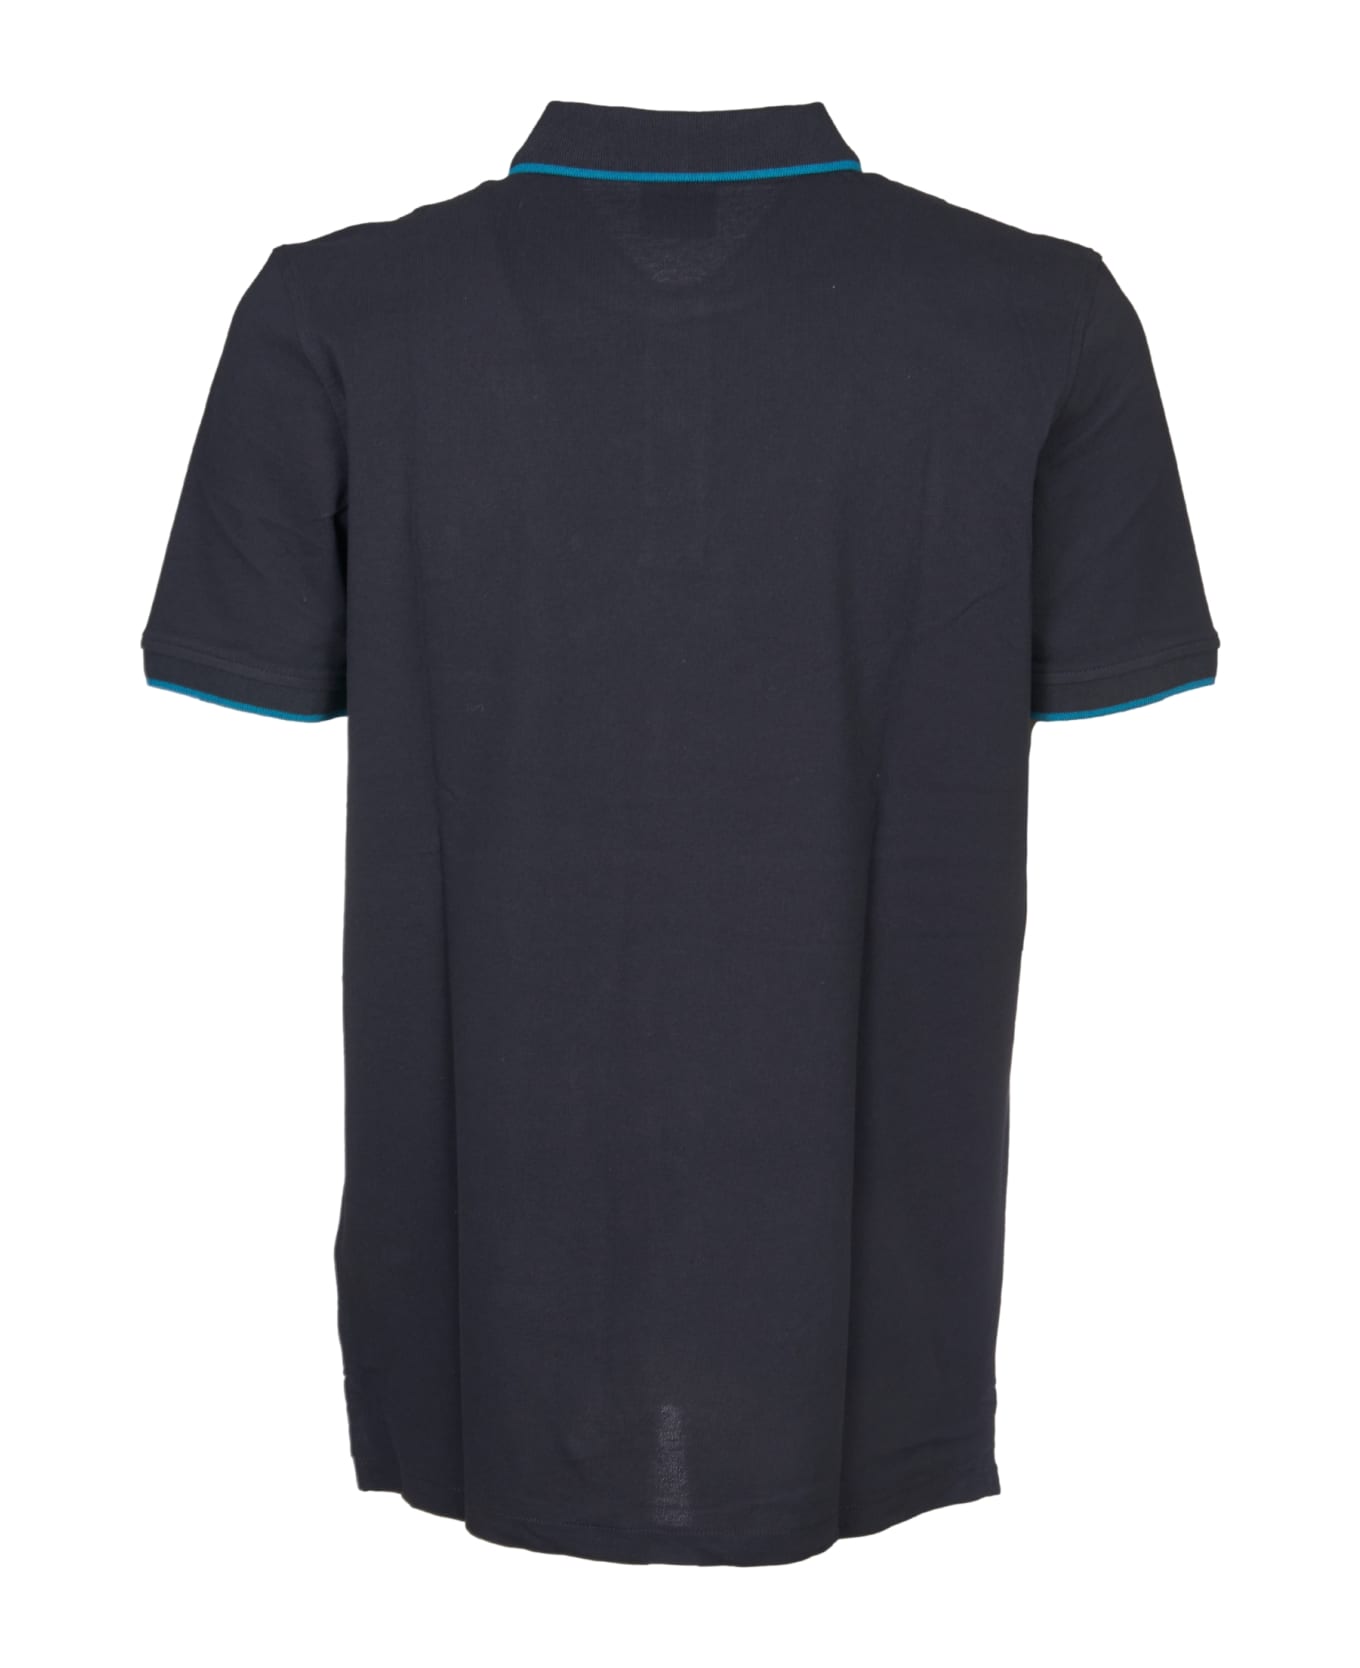 Paul Smith Polo Shirt - Blue